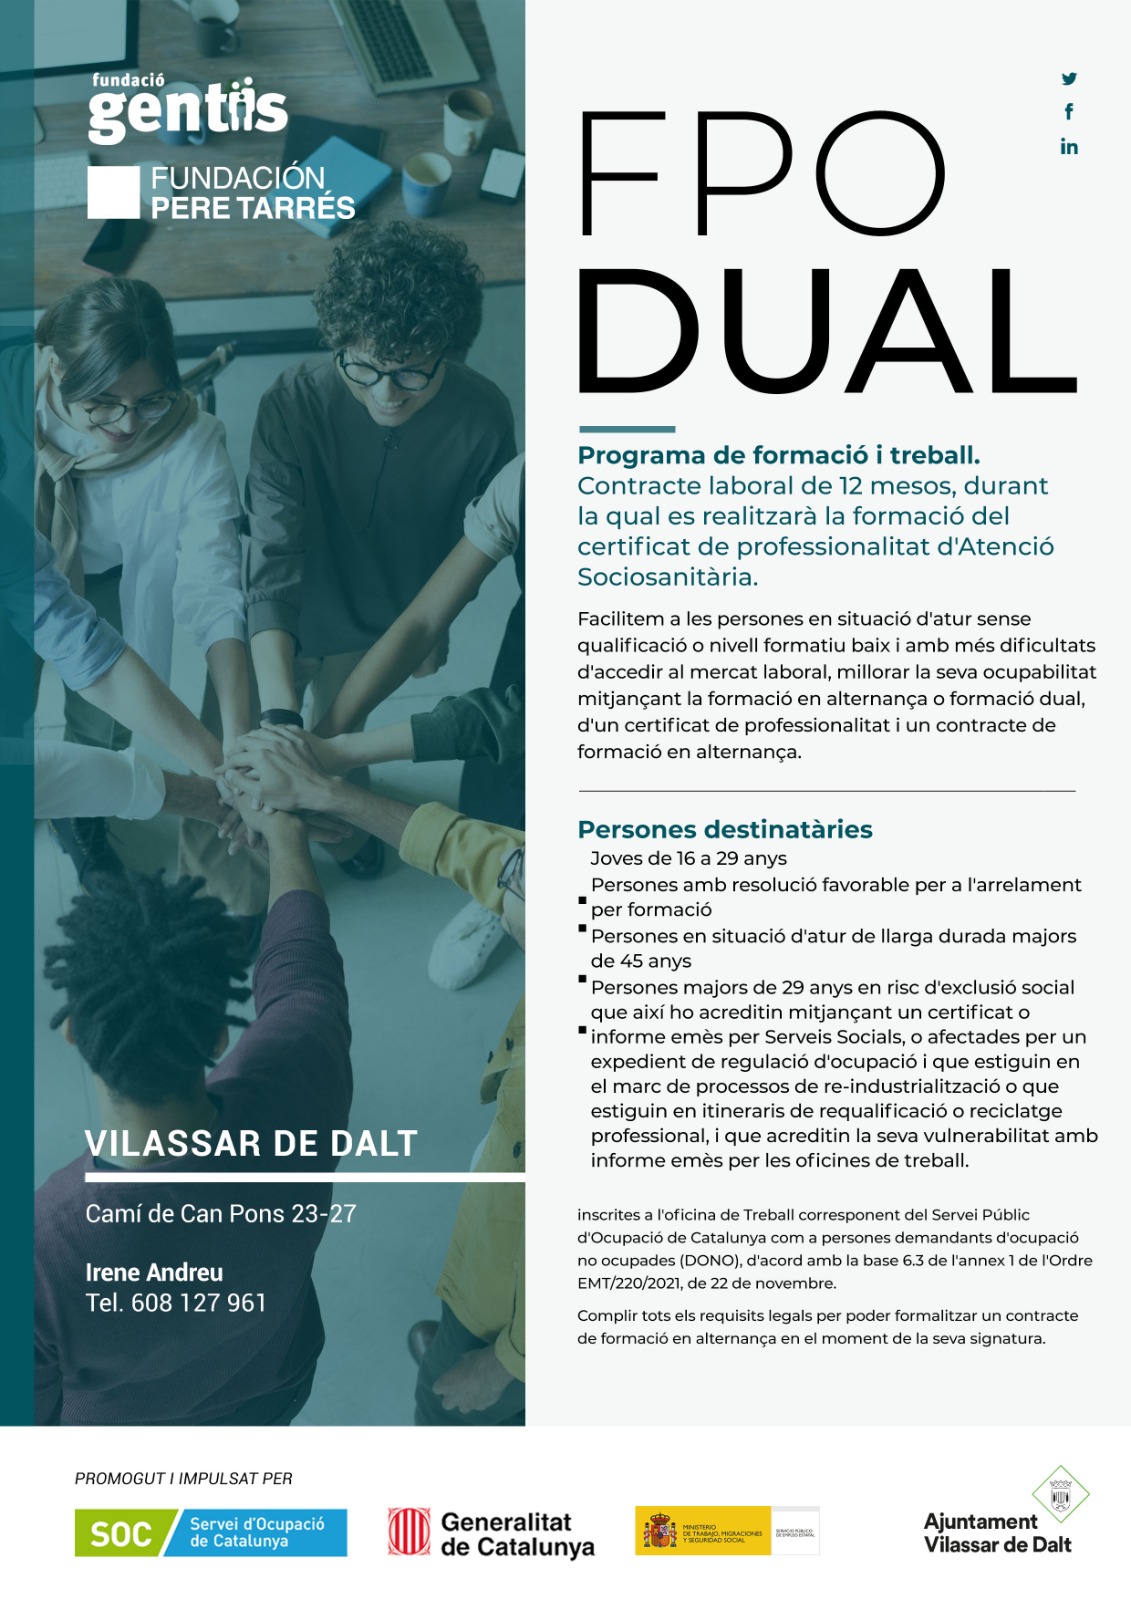 Vilassar acollirà un programa de formació dual d'Atenció sociosanitària